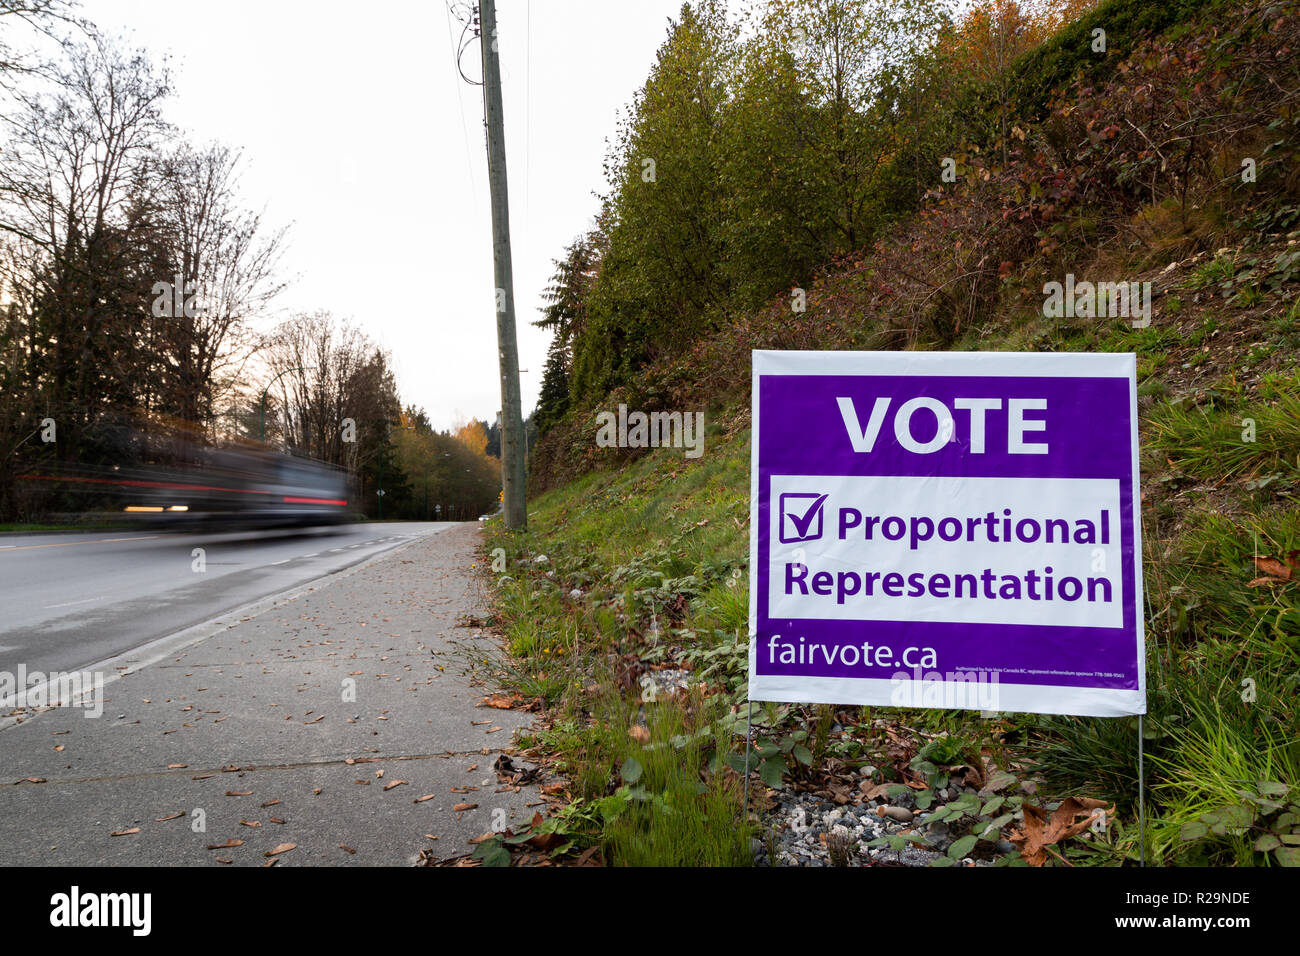 NORTH VANCOUVER, BC, CANADA - NOV 08, 2018 : la signalisation sur Dollarton Highway rappelant aux citoyens de voter en C.-B. La réforme électorale du référendum pour la représentation proportionnelle. Banque D'Images